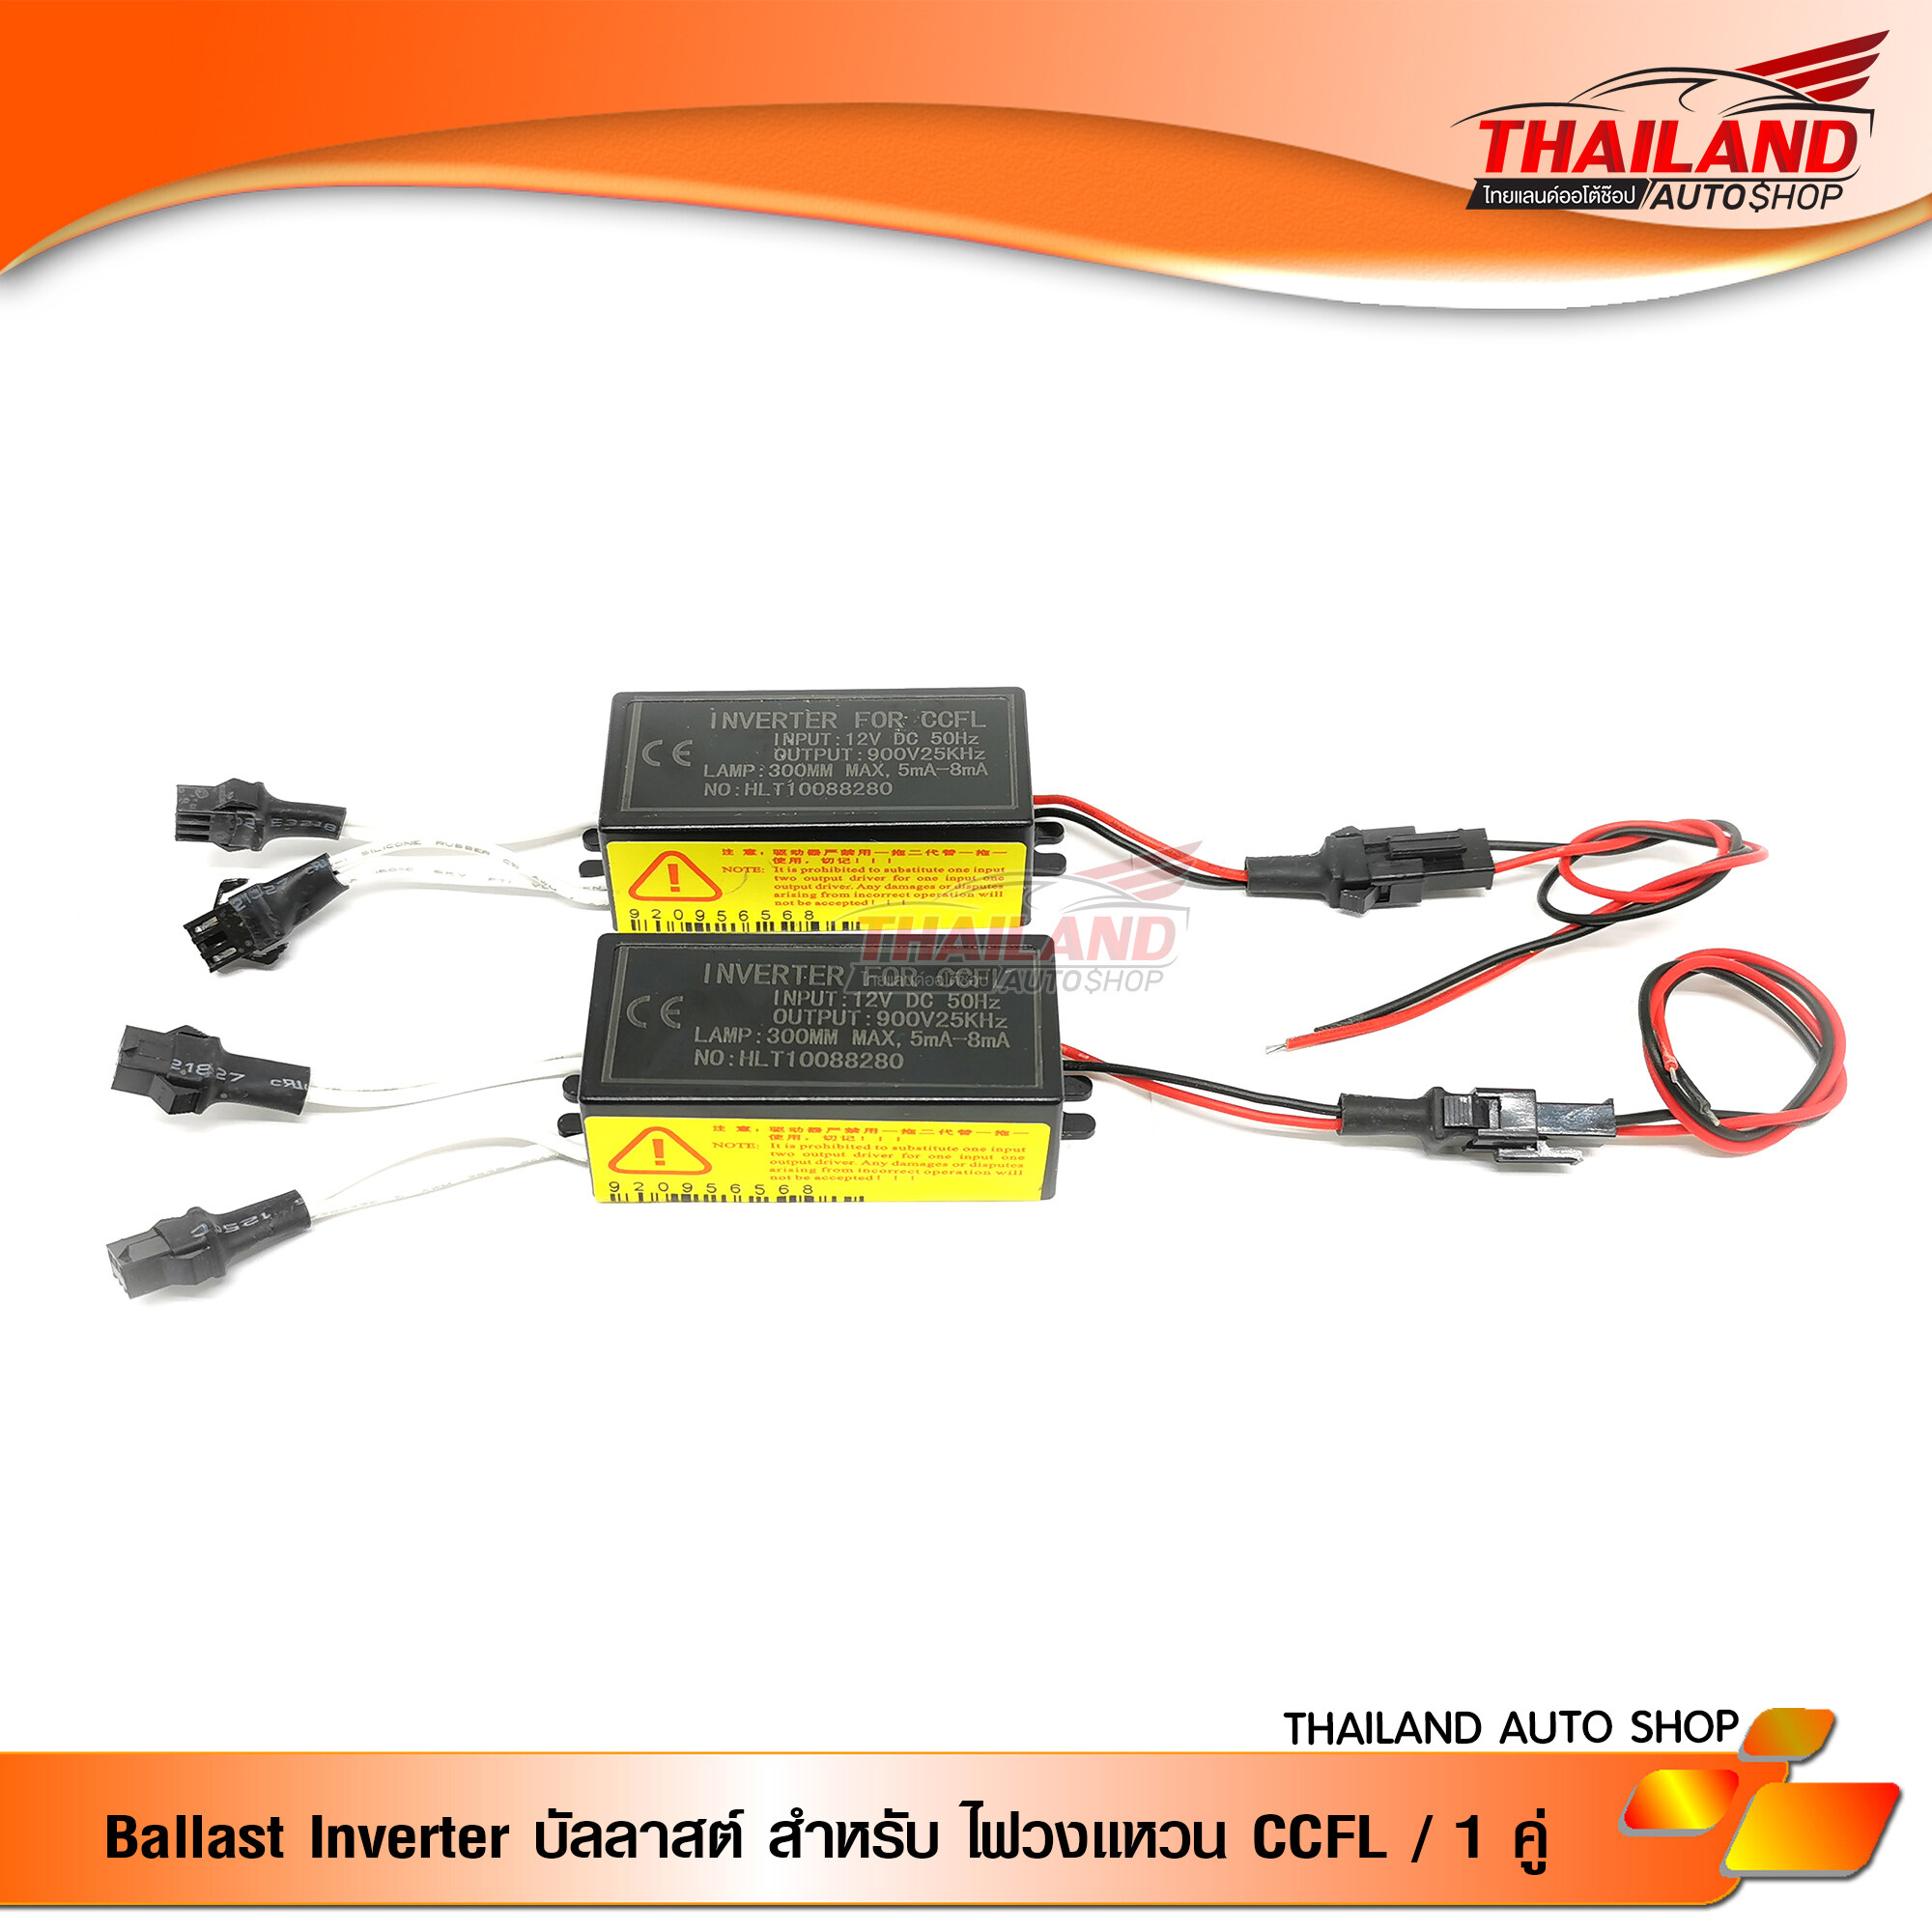 Ballast Inverter บัลลาสต์ สำหรับ ไฟวงแหวน CCFL / 1 คู่